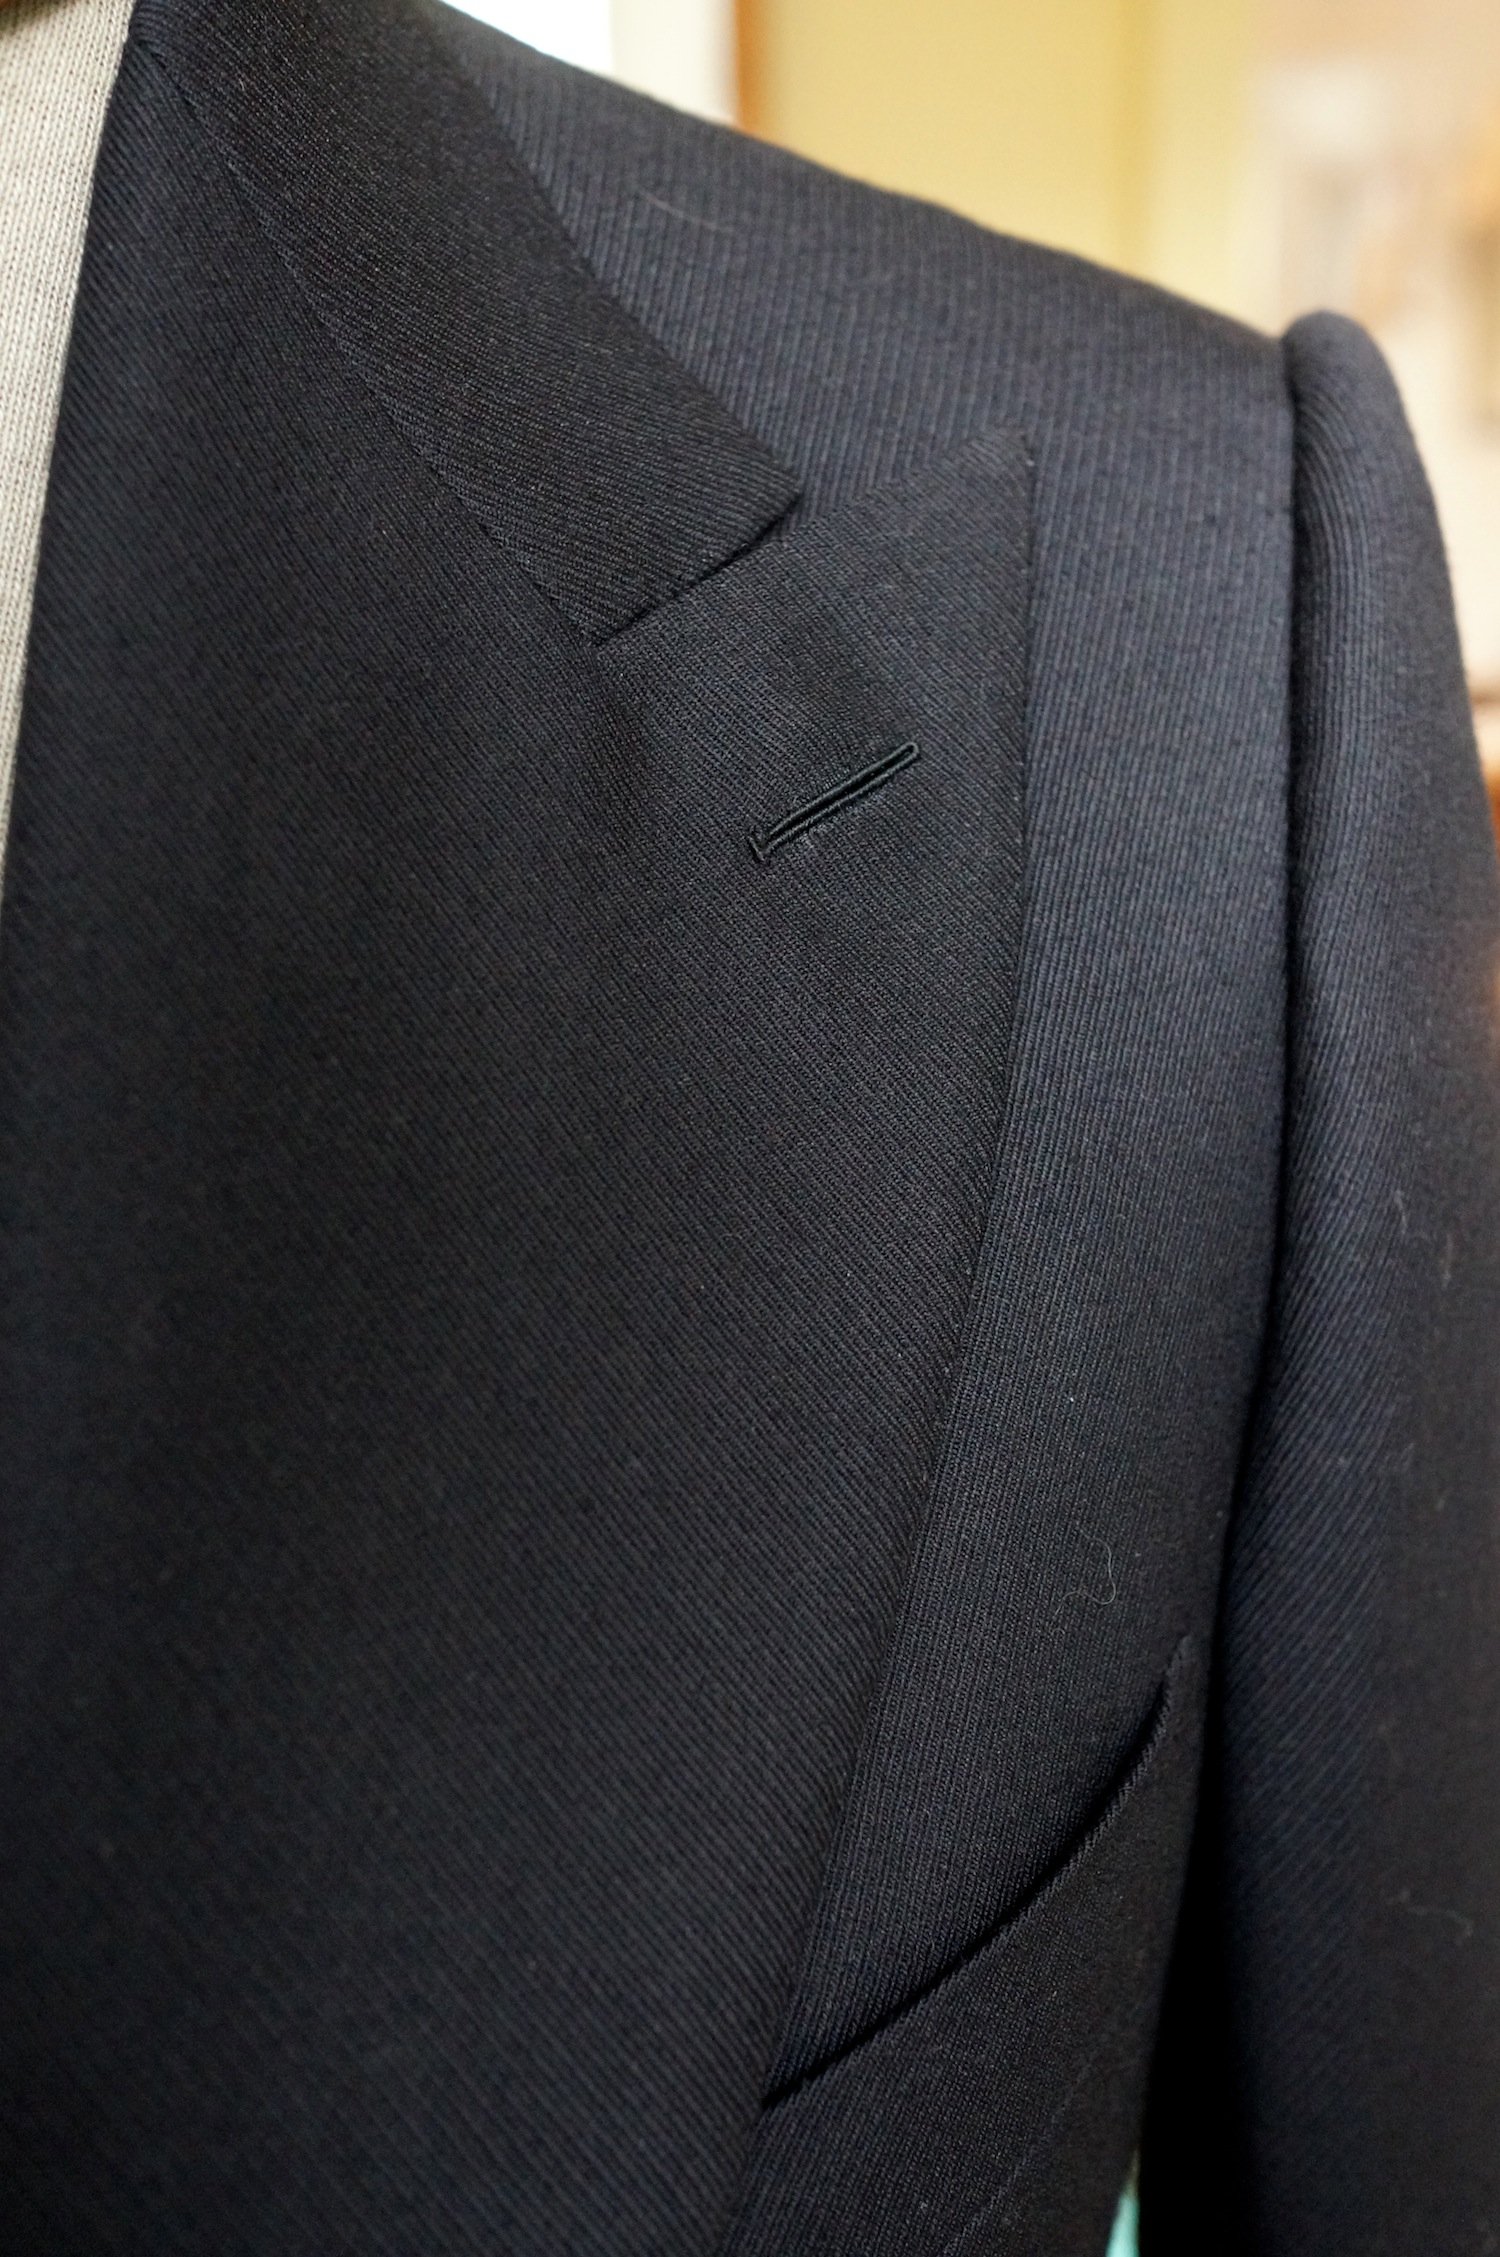 Chittleborough & Morgan suit: Part 4 – Permanent Style